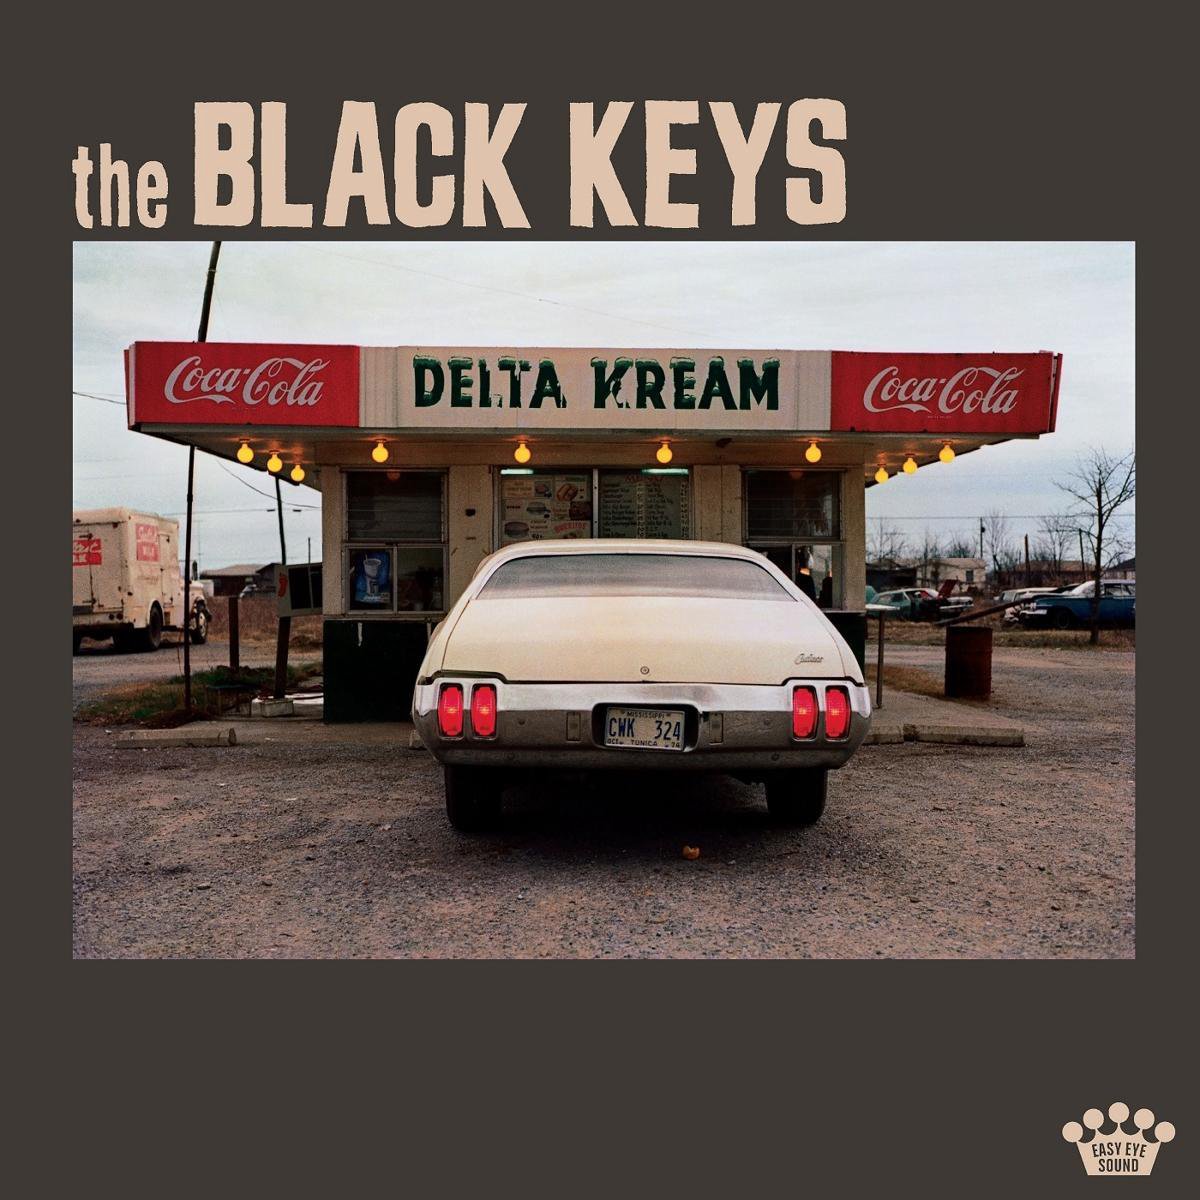 The Black Keys - the Black Keys